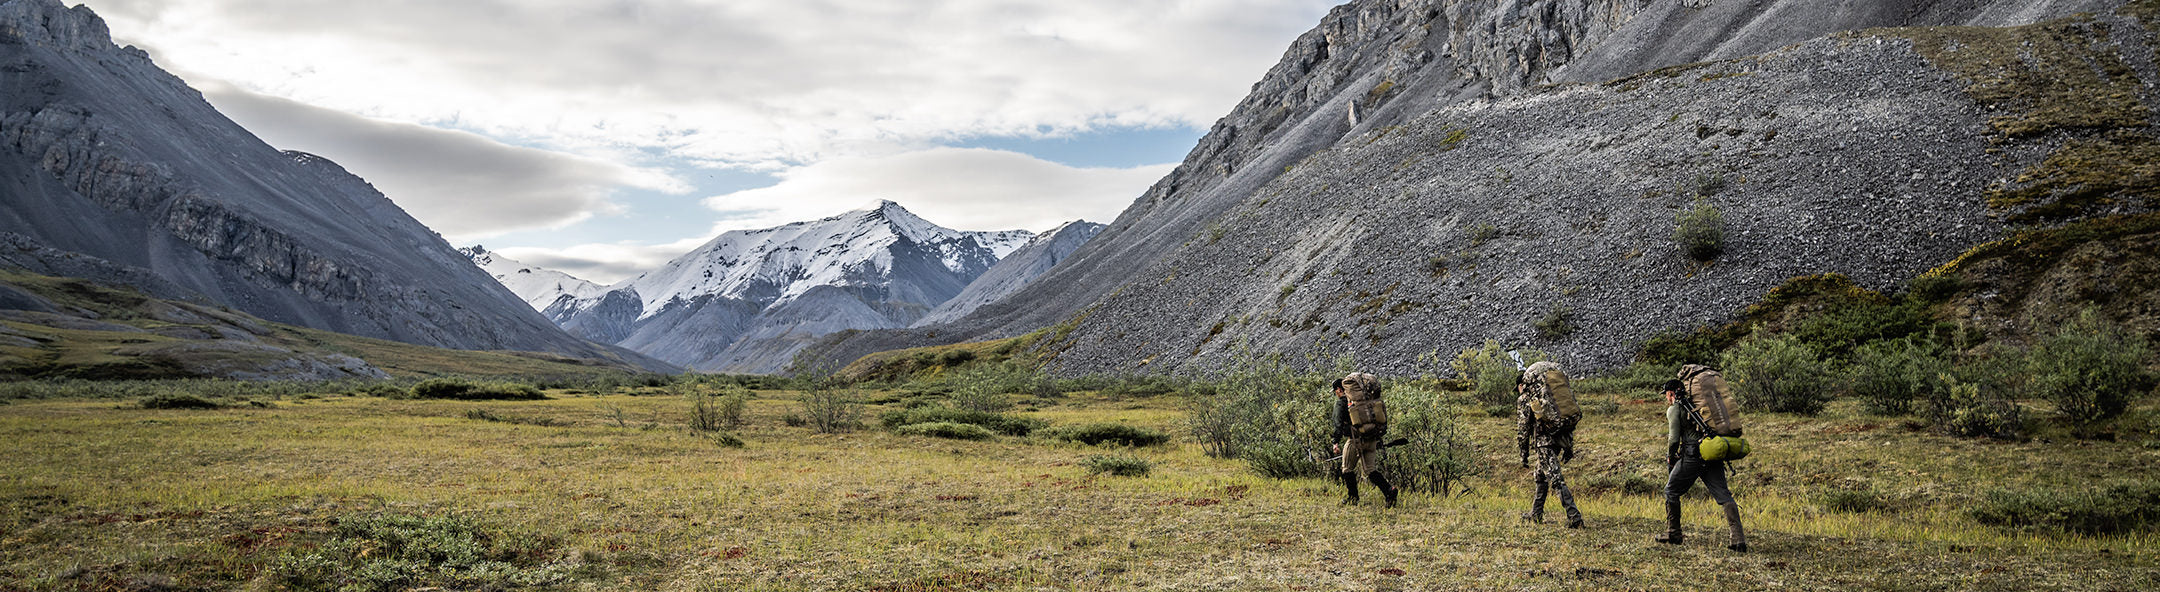 Hunters walking through mountain range